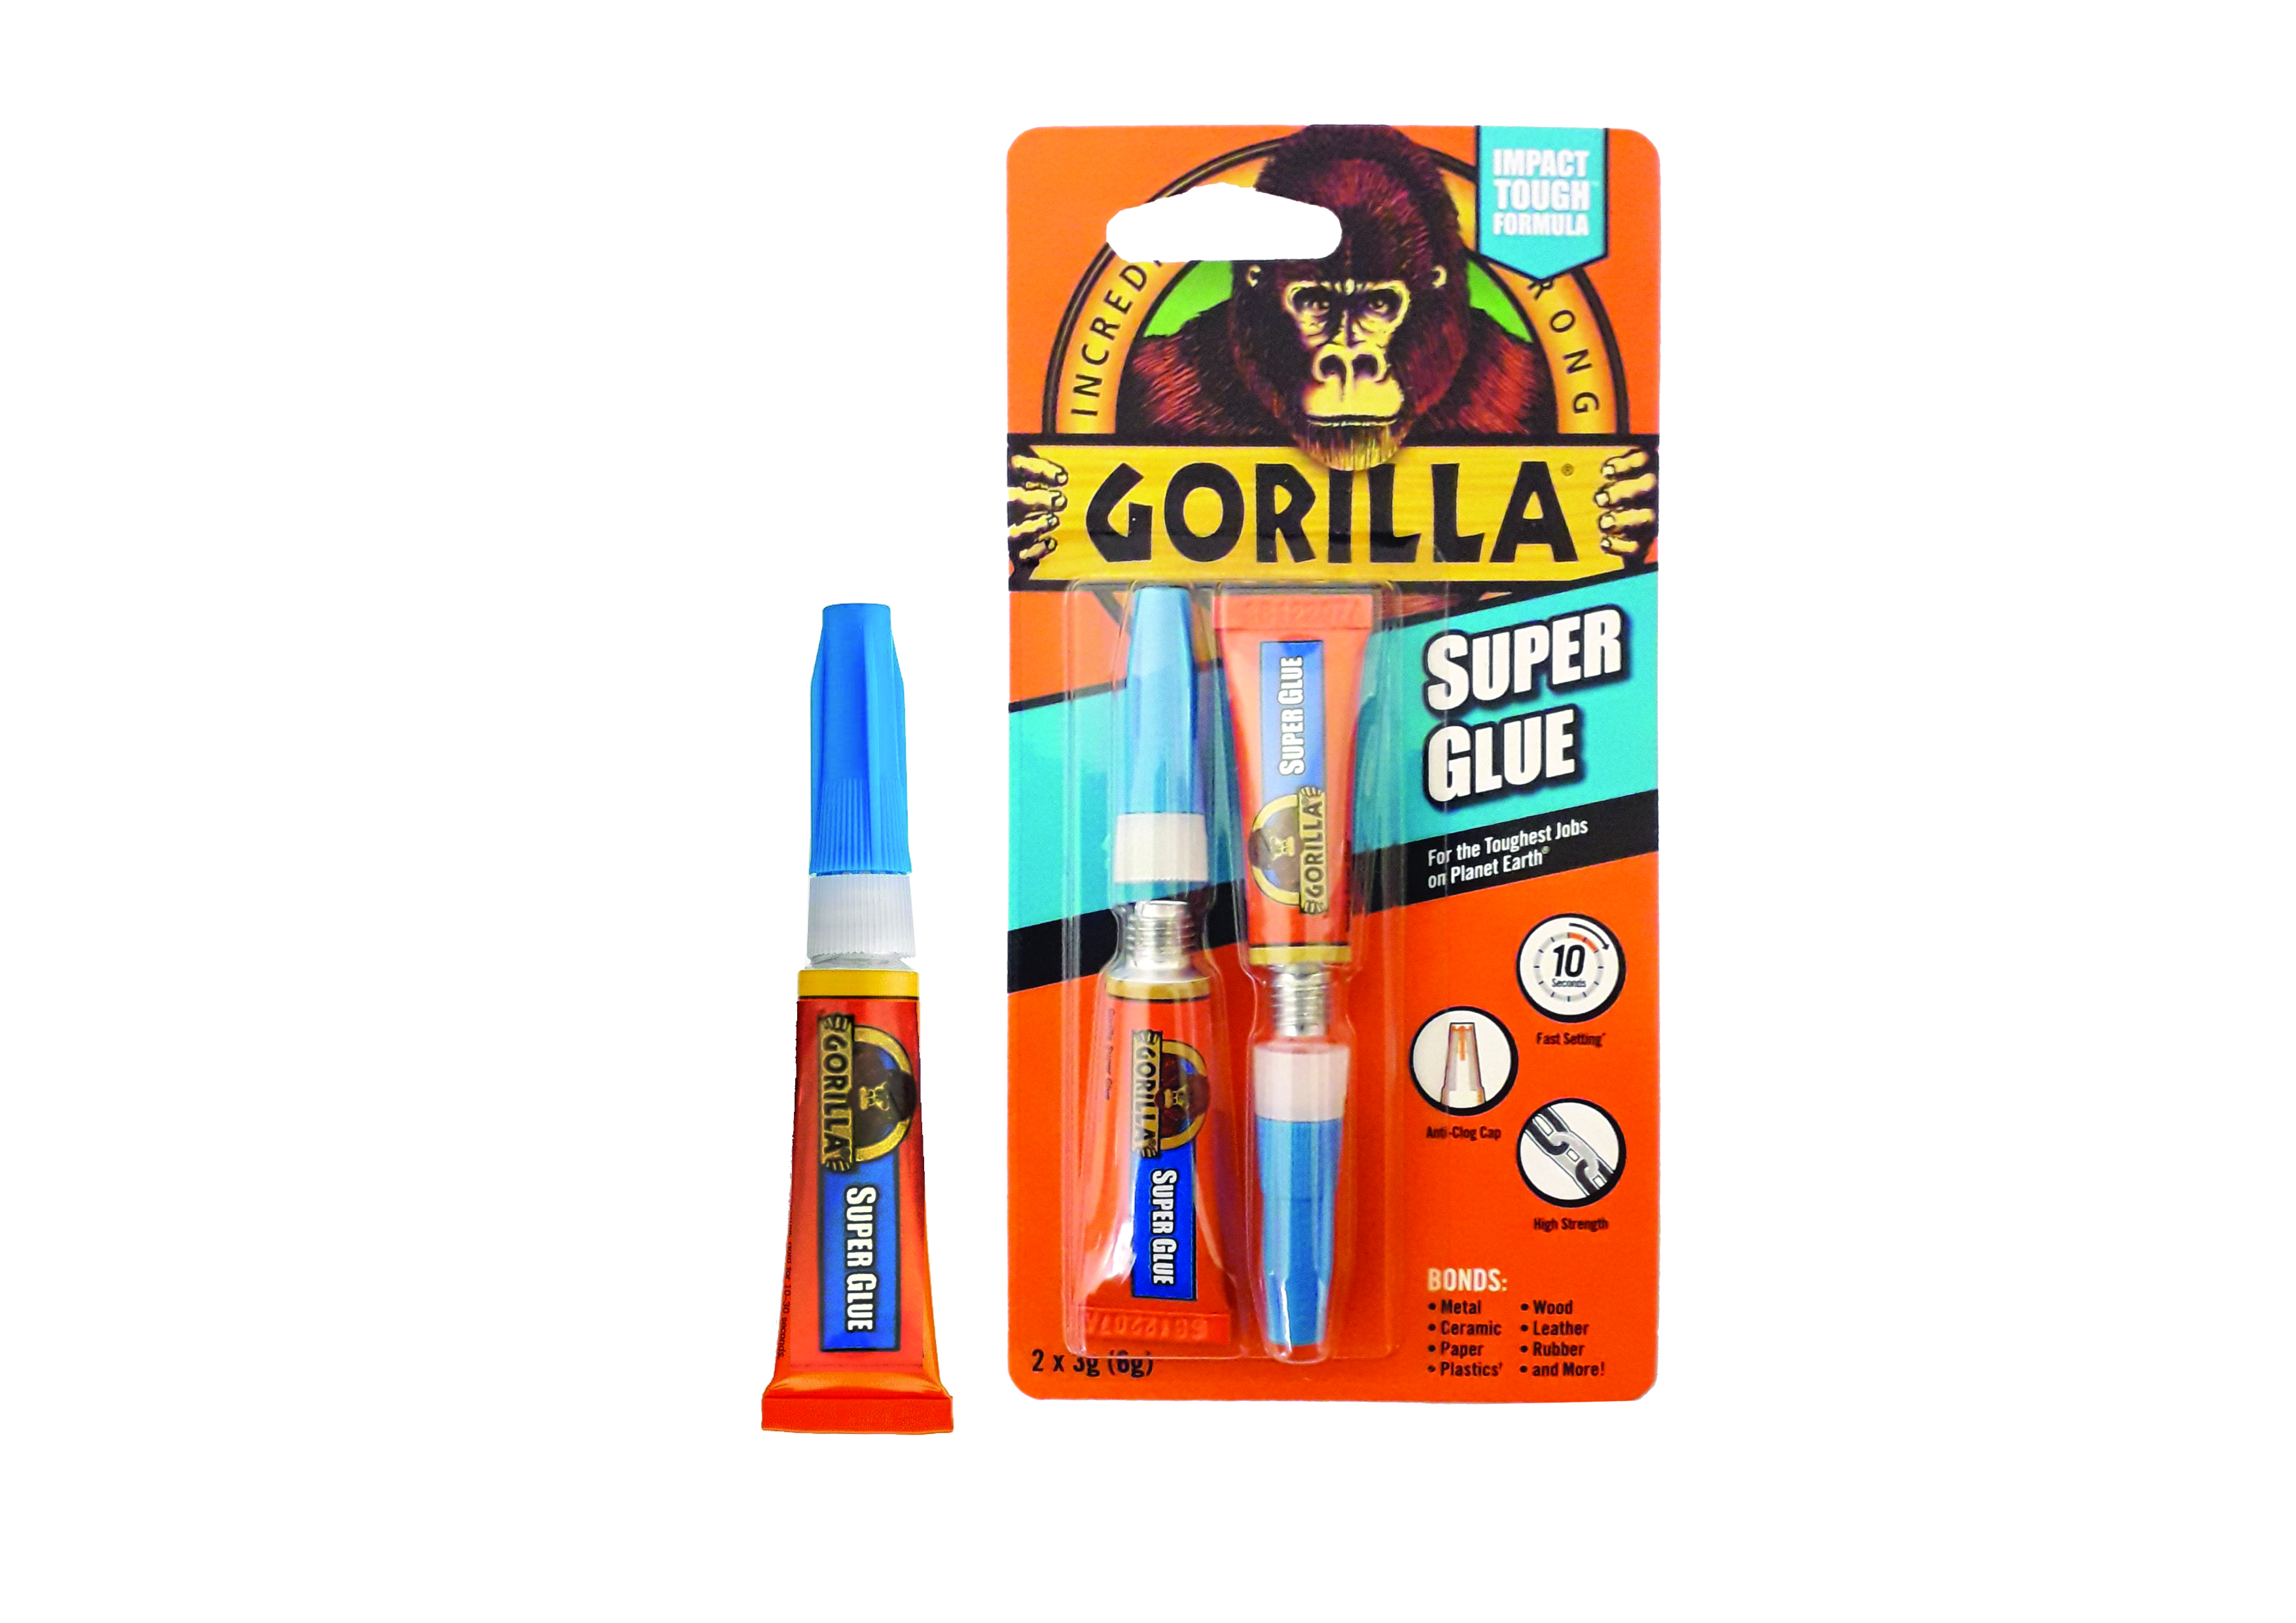 Gorilla Super Glue 2 x 3g  SINGLE tube